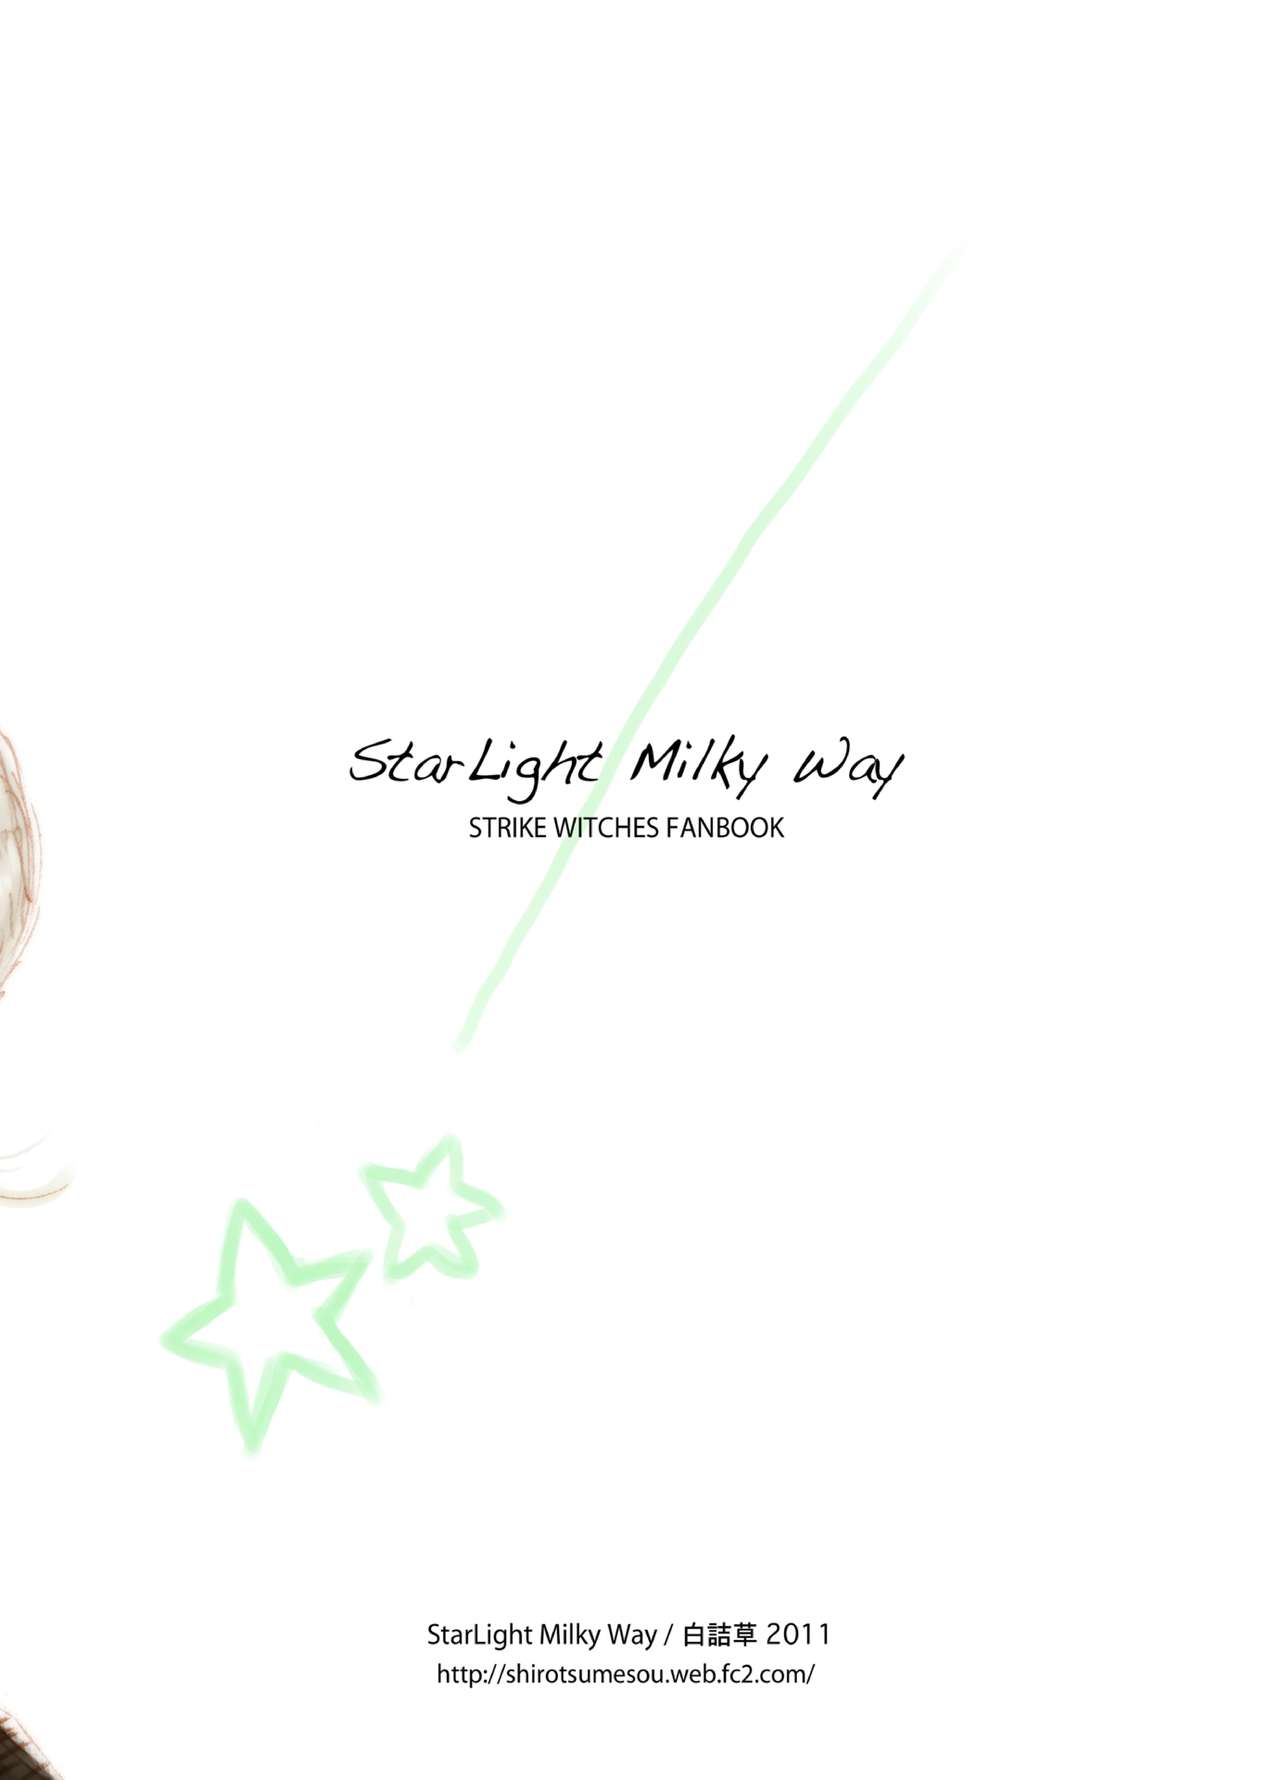 [白詰草 (了解)] Starlight MilkyWay (ストライクウィッチーズ) [DL版]